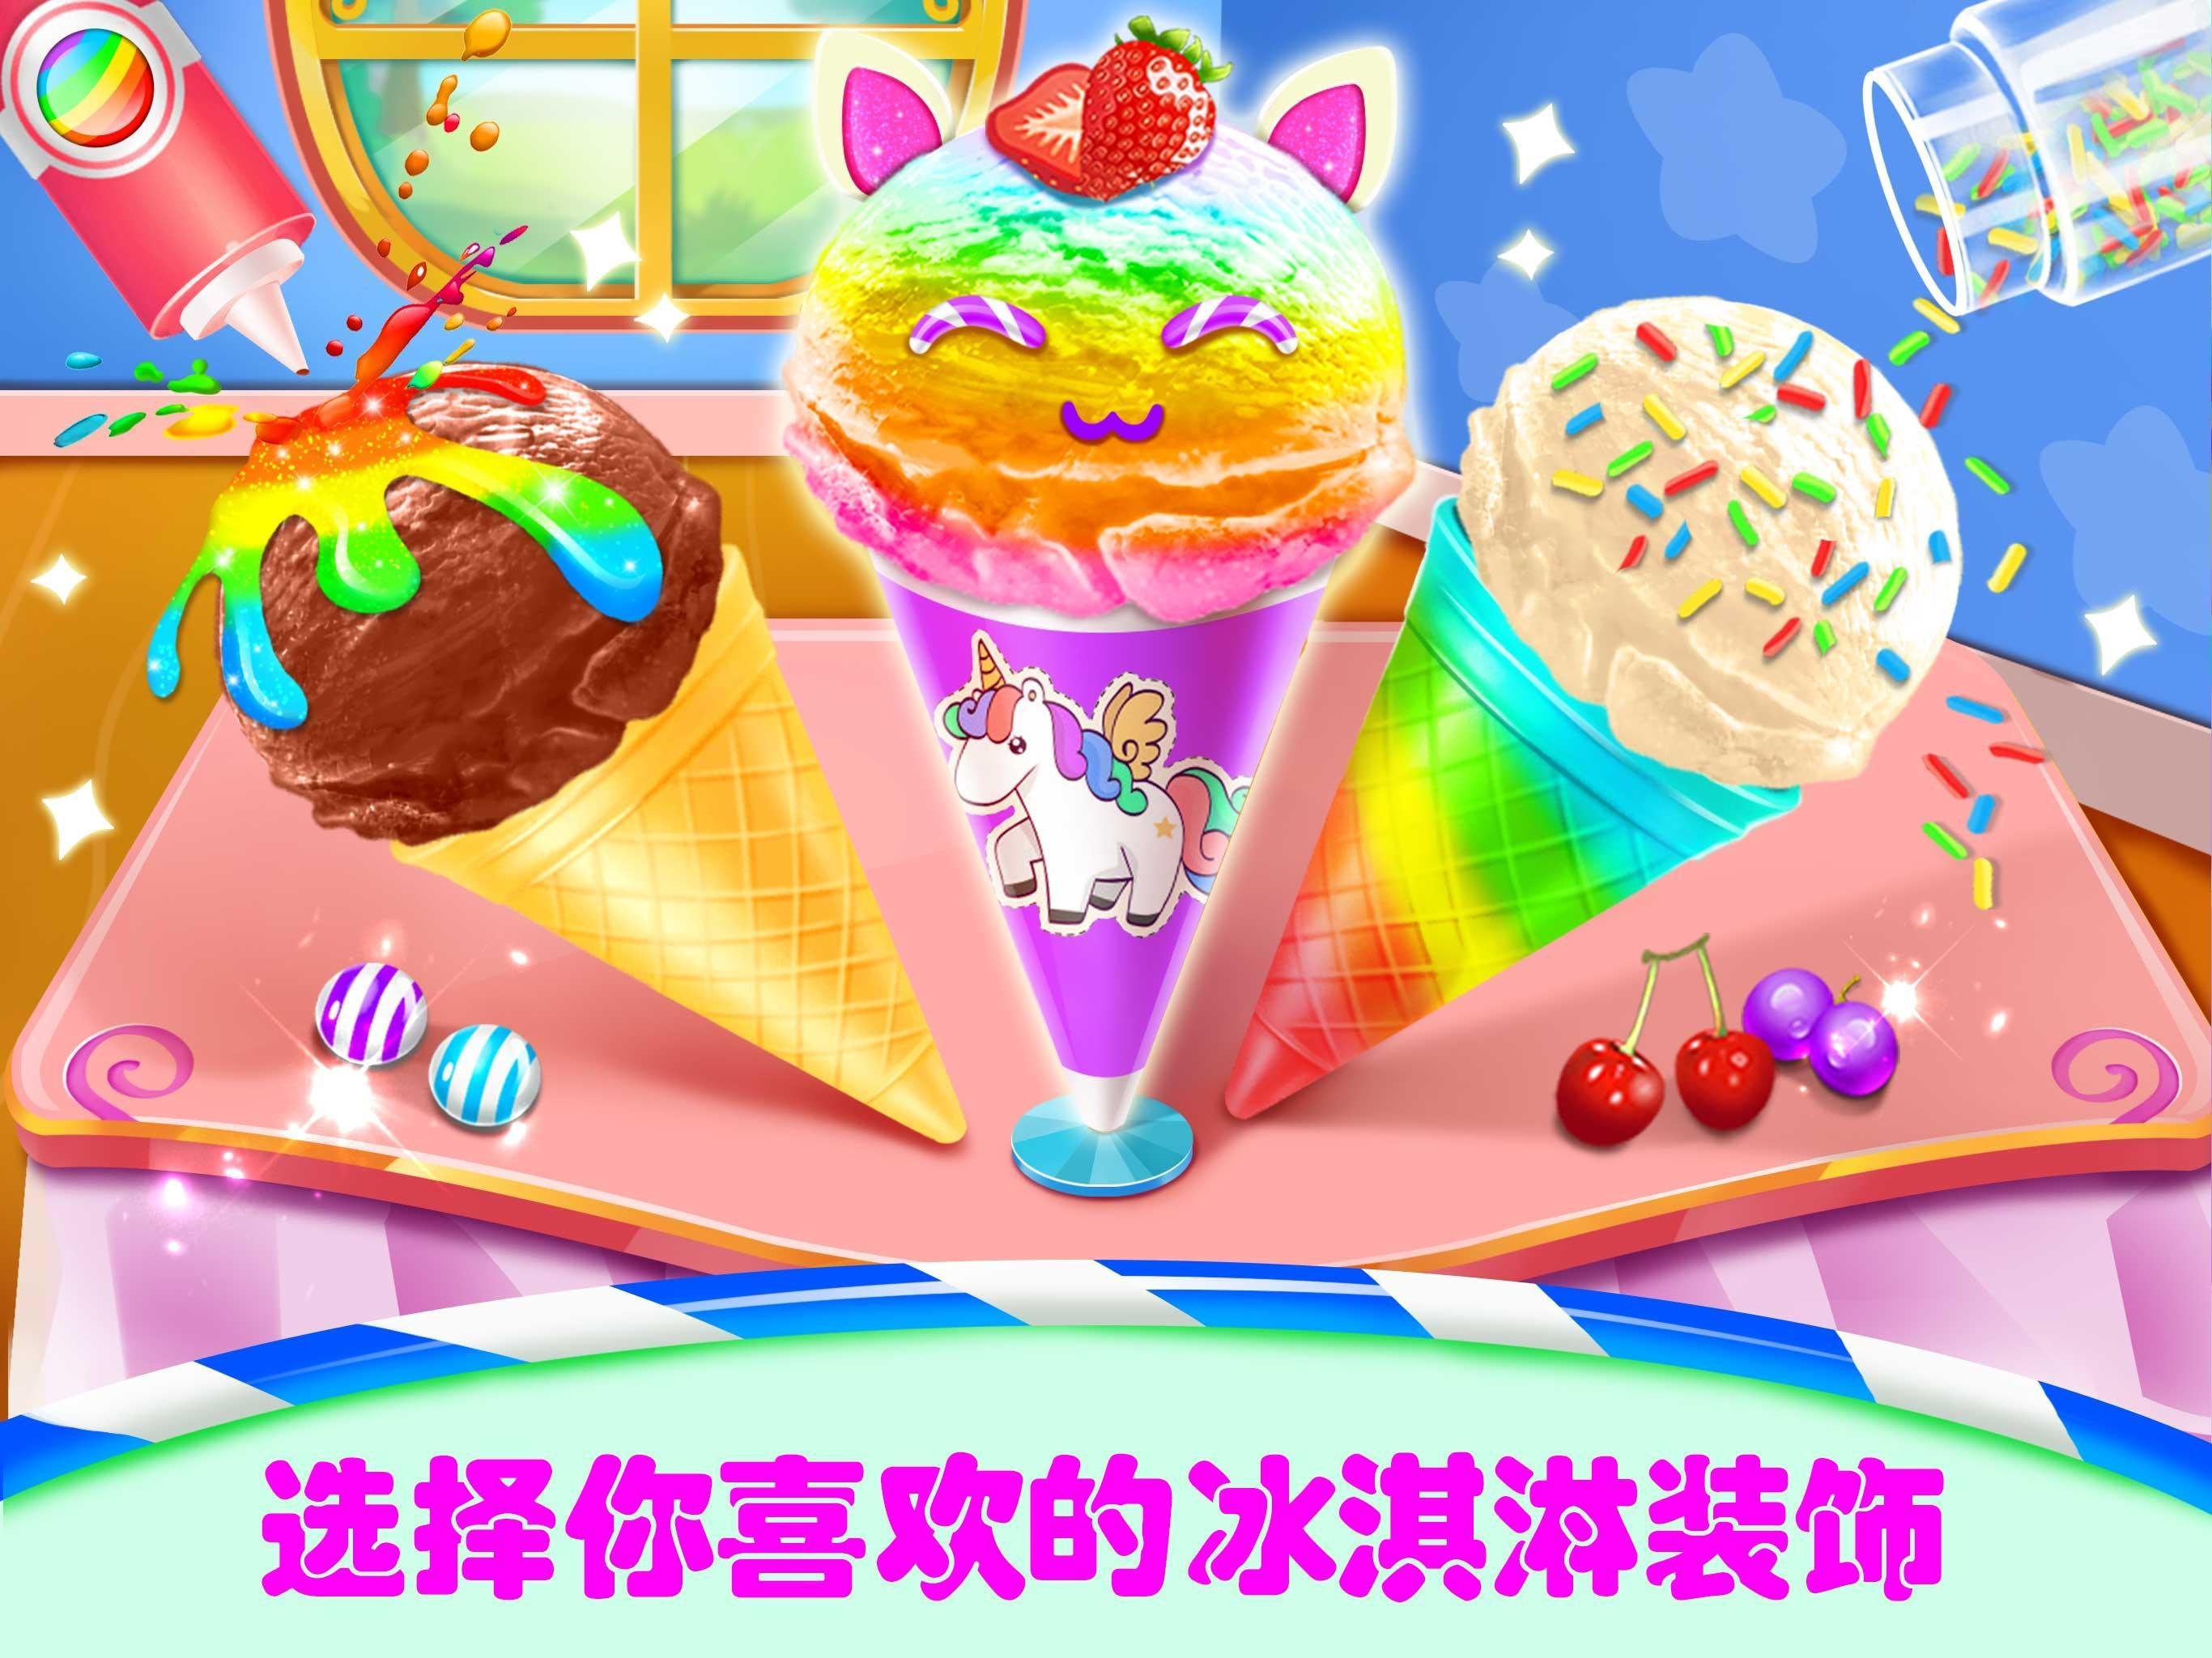 糖果冰淇淋店好玩吗 糖果冰淇淋店玩法简介